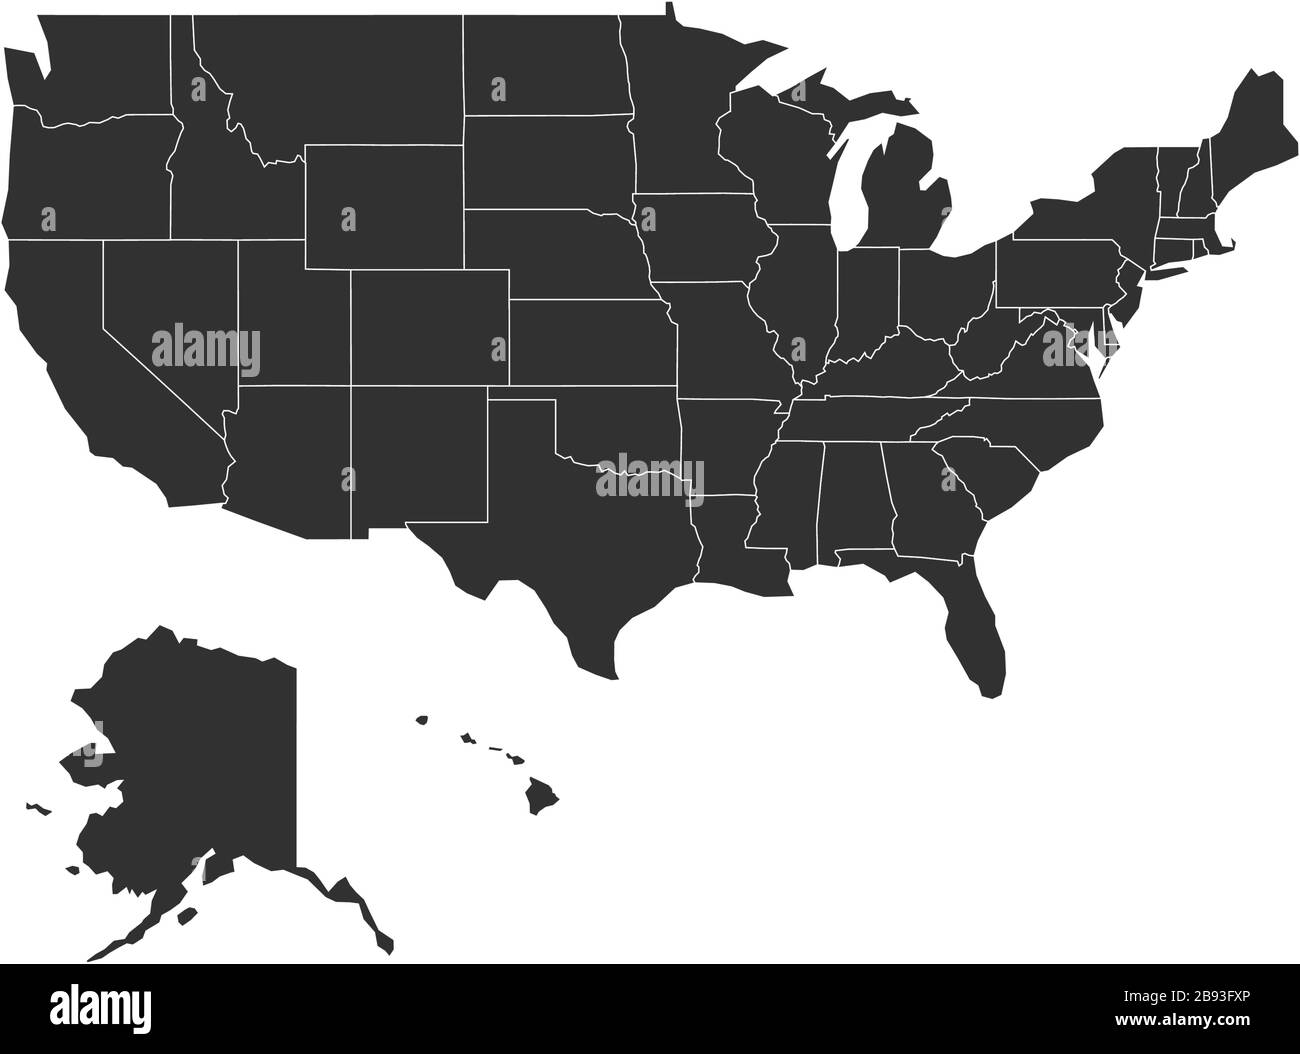 Mappa semplice degli stati uniti. Illustrazione vettoriale in stock isolata su sfondo bianco. Illustrazione Vettoriale